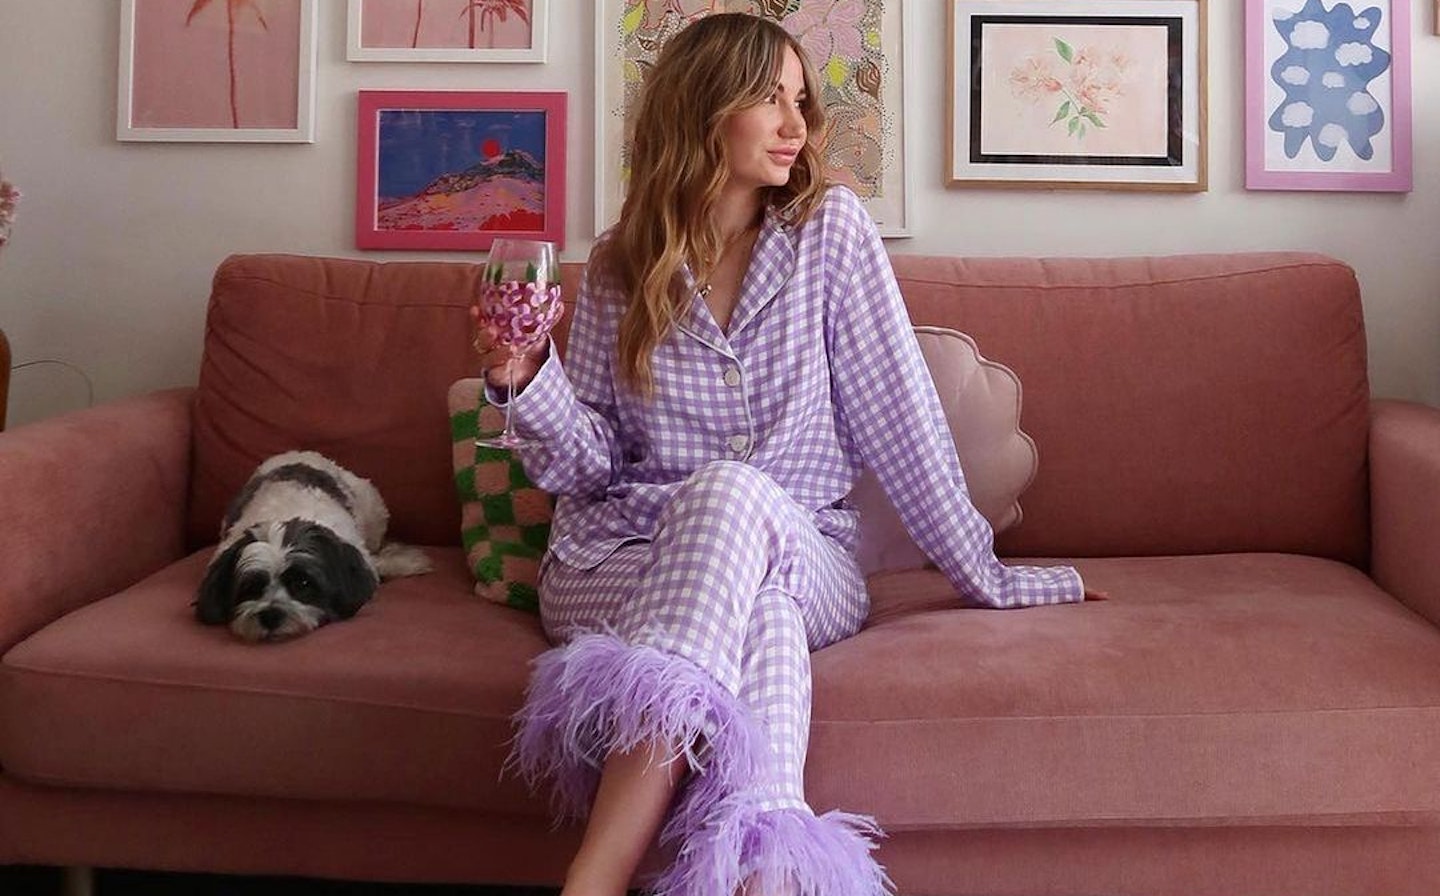 Pyjama Party - A&E Magazine